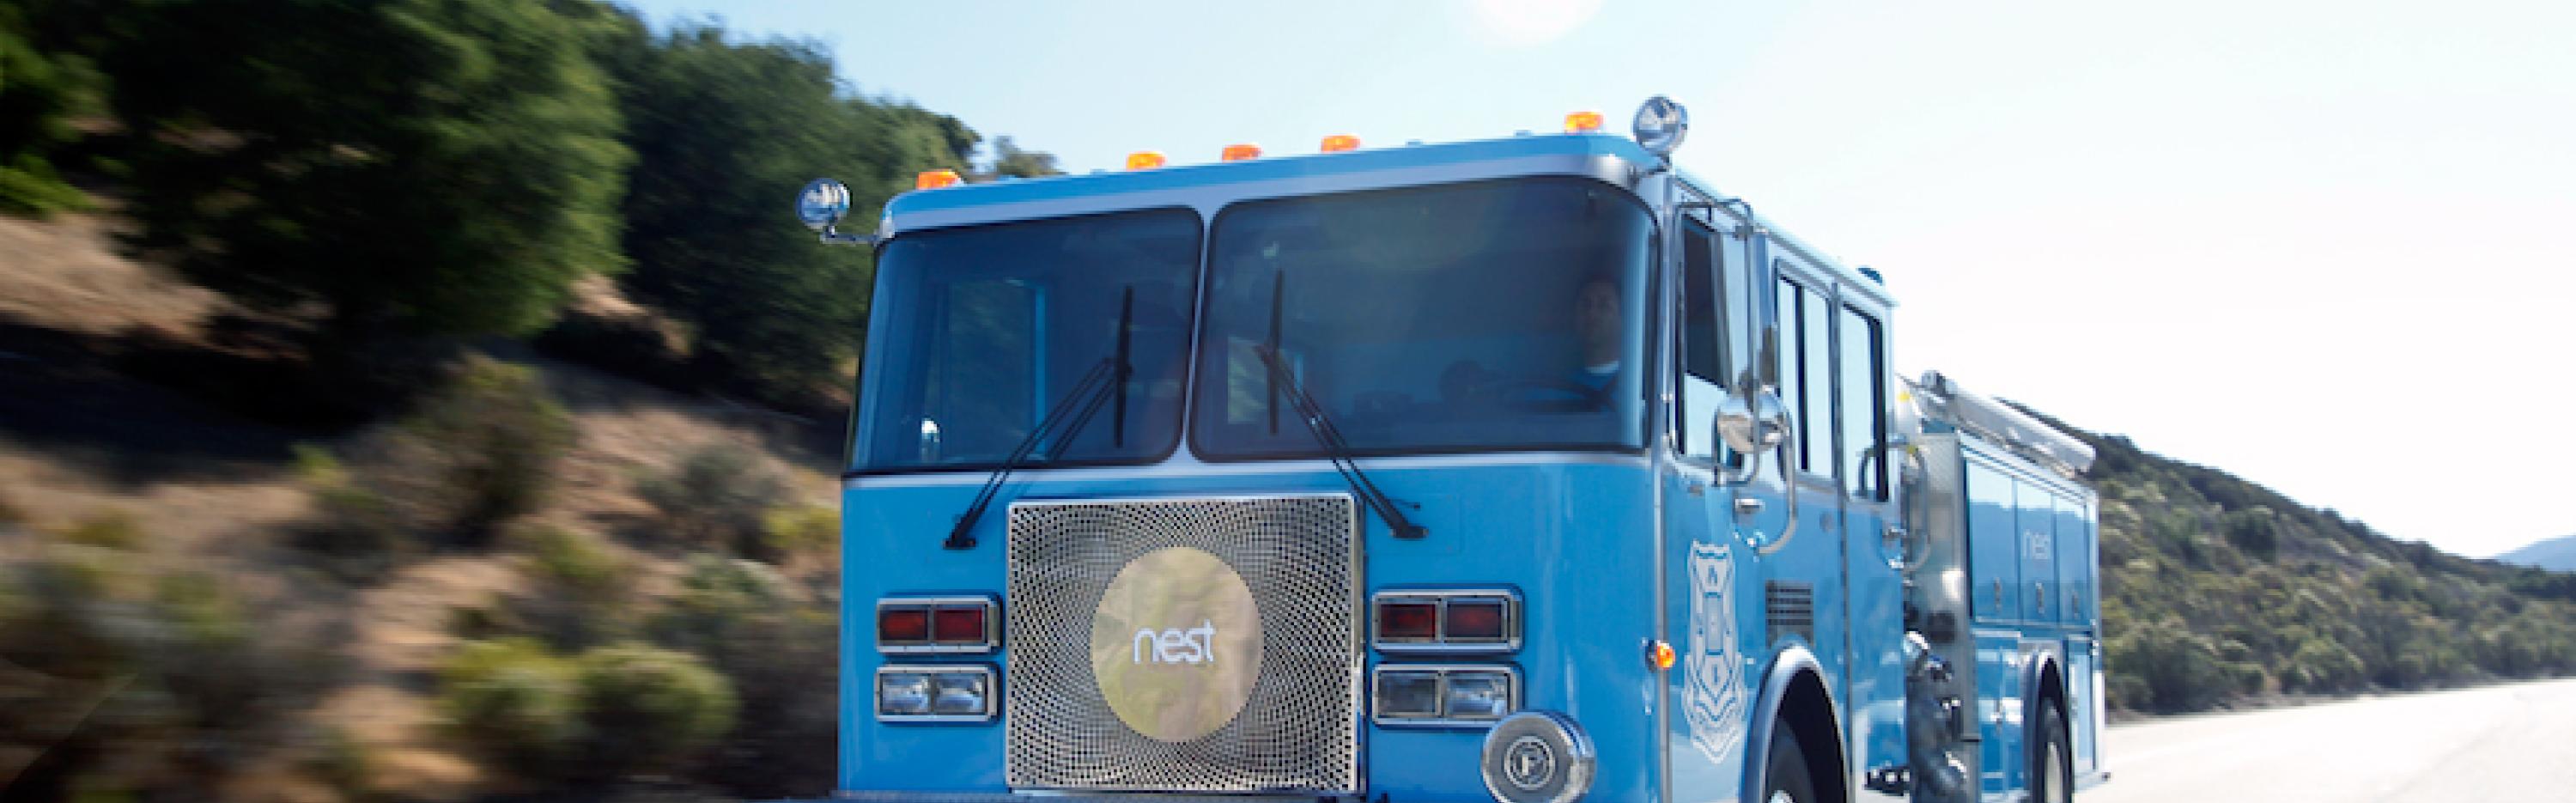 Nest Fire Truck